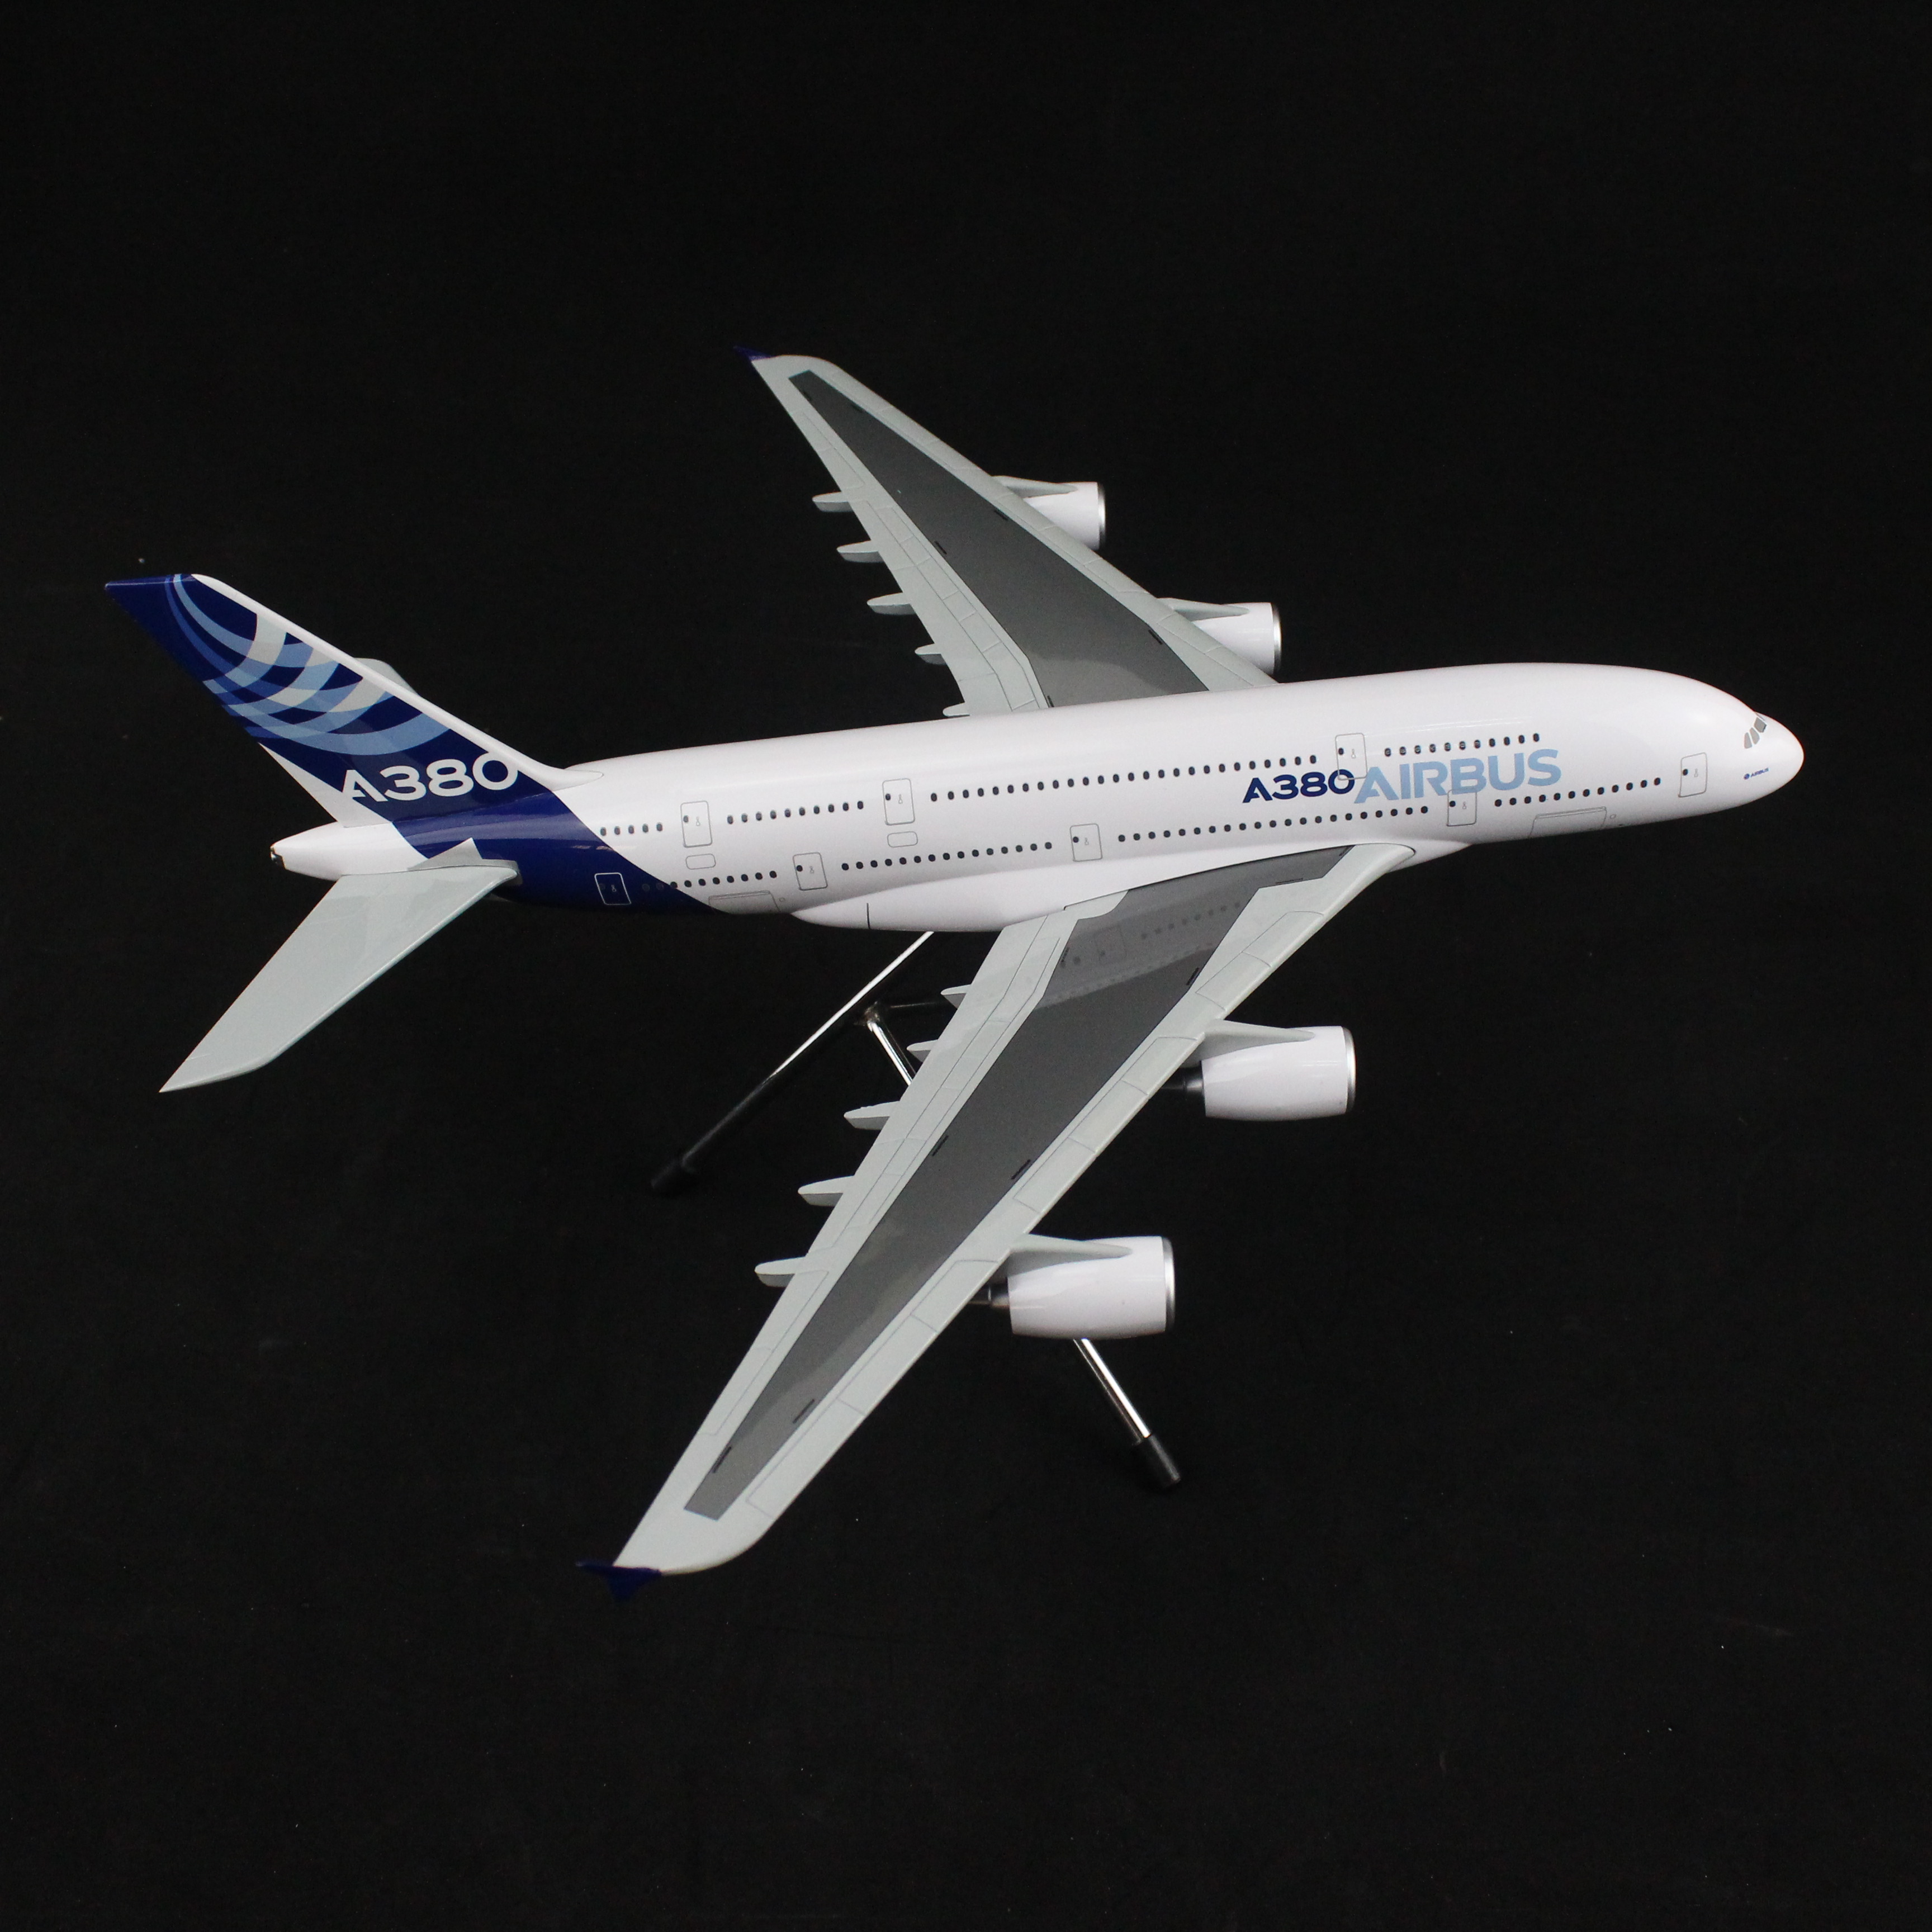 air bus空客a380 1:200 空中巨无霸飞机模型拼装模型静态模型摆件